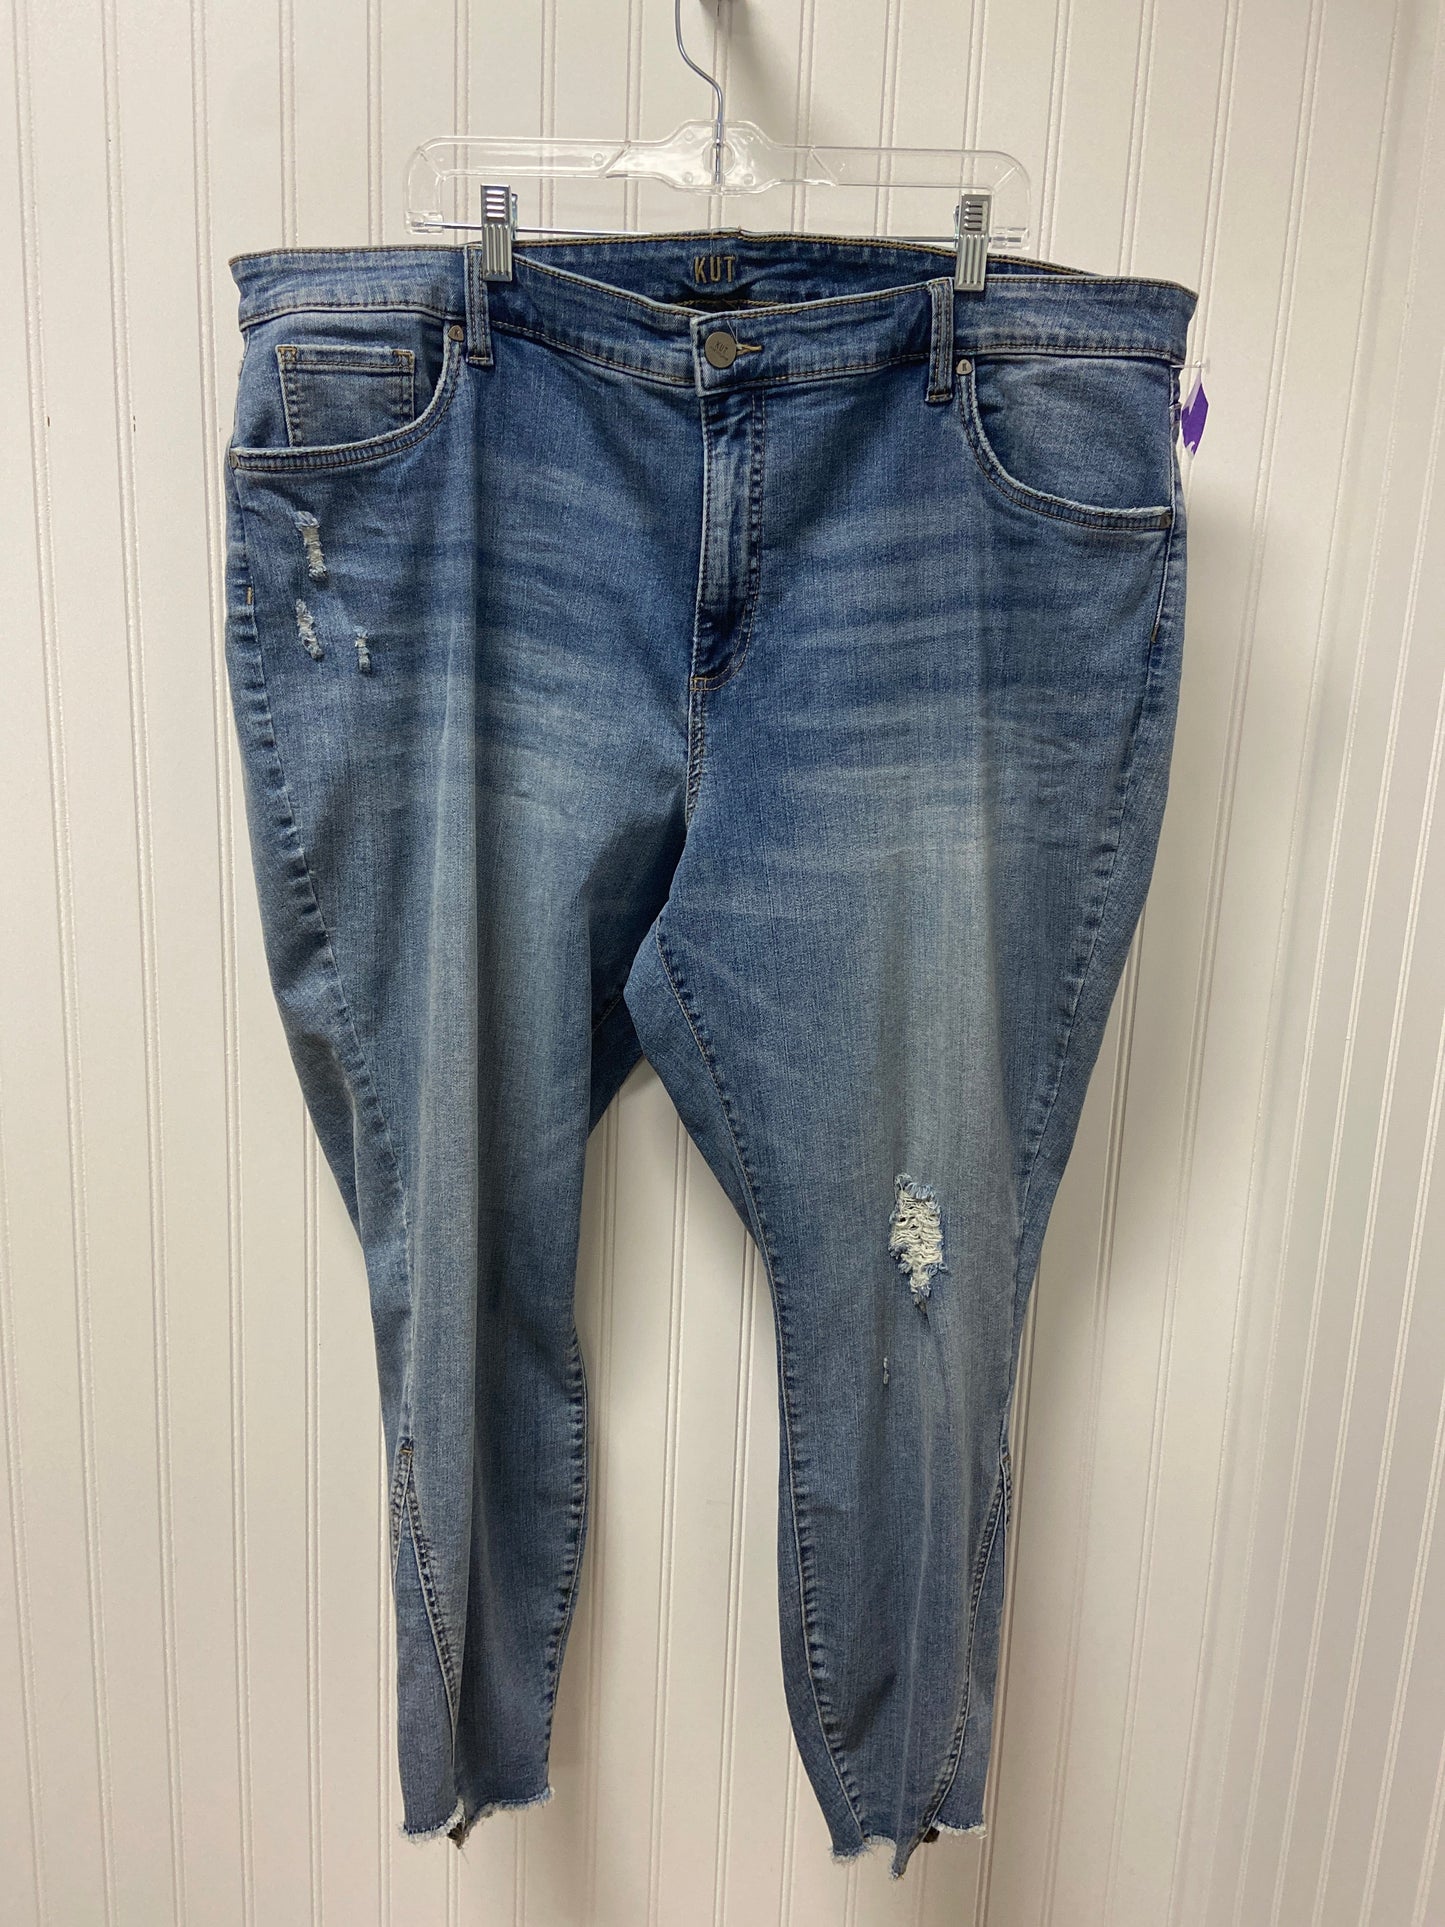 Blue Denim Jeans Skinny Kut, Size 24w